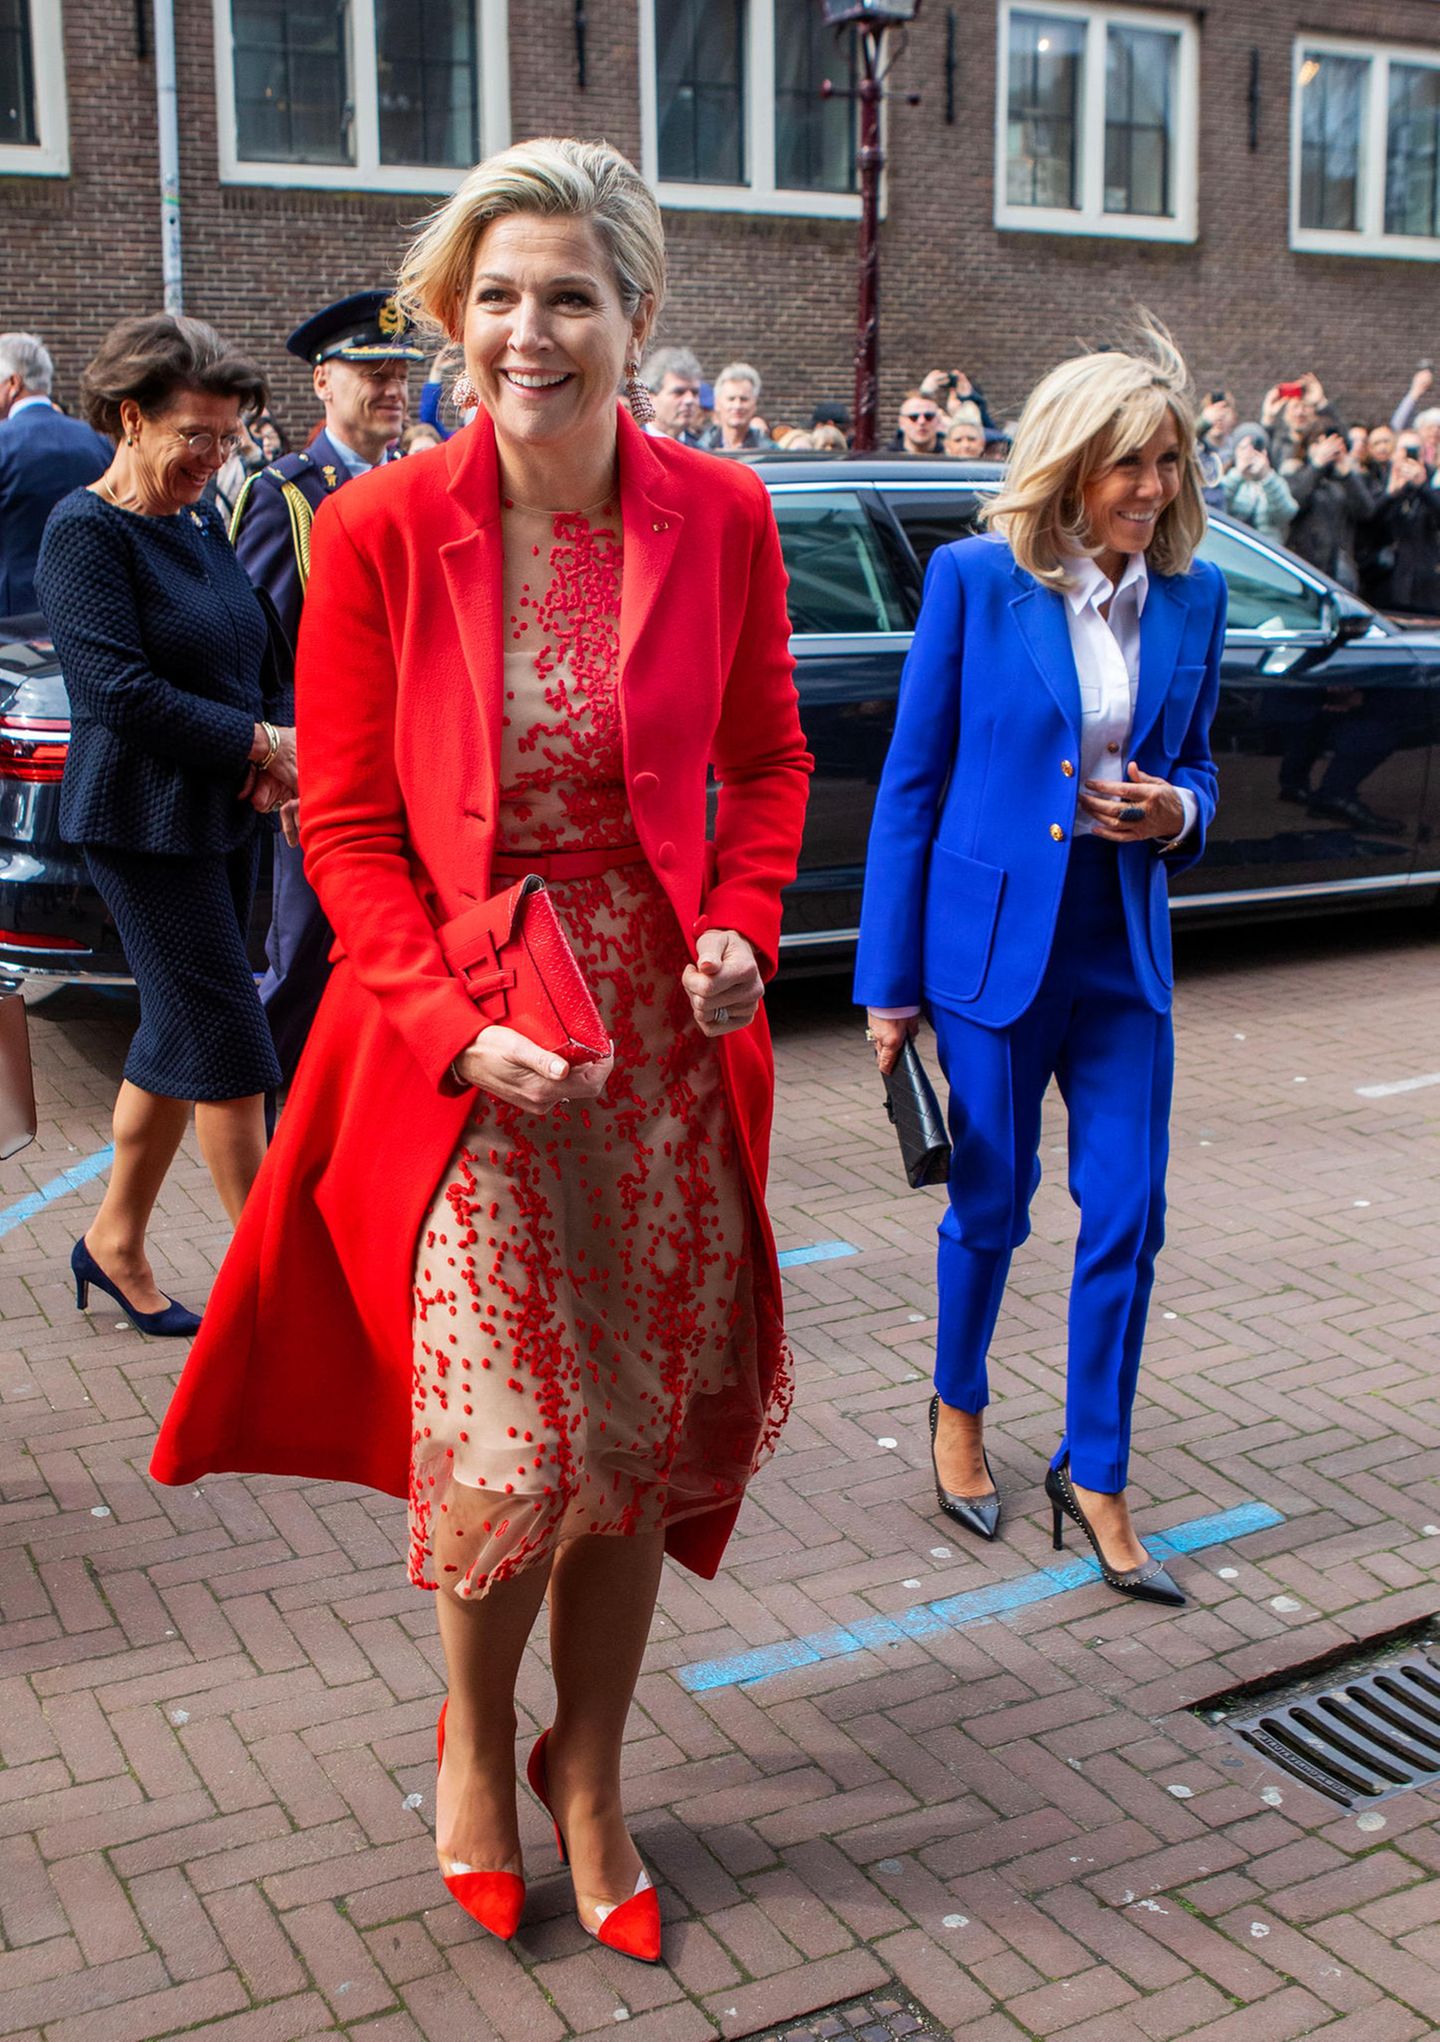 Königin Máxima und Frankreich Première Dame Brigitte Macron besuchen in Amsterdam gemeinsam das Anne-Frank-Haus, ein wichtiger Termin, und die Looks der beiden könnten farblich nicht schöner aufeinander abgestimmt sein: Rot, Weiß und Blau bzw. Blau, Weiß und Rot sind die Farben sowohl der niederländischen als auch der französischen Flagge. Farbsymbolik pur!